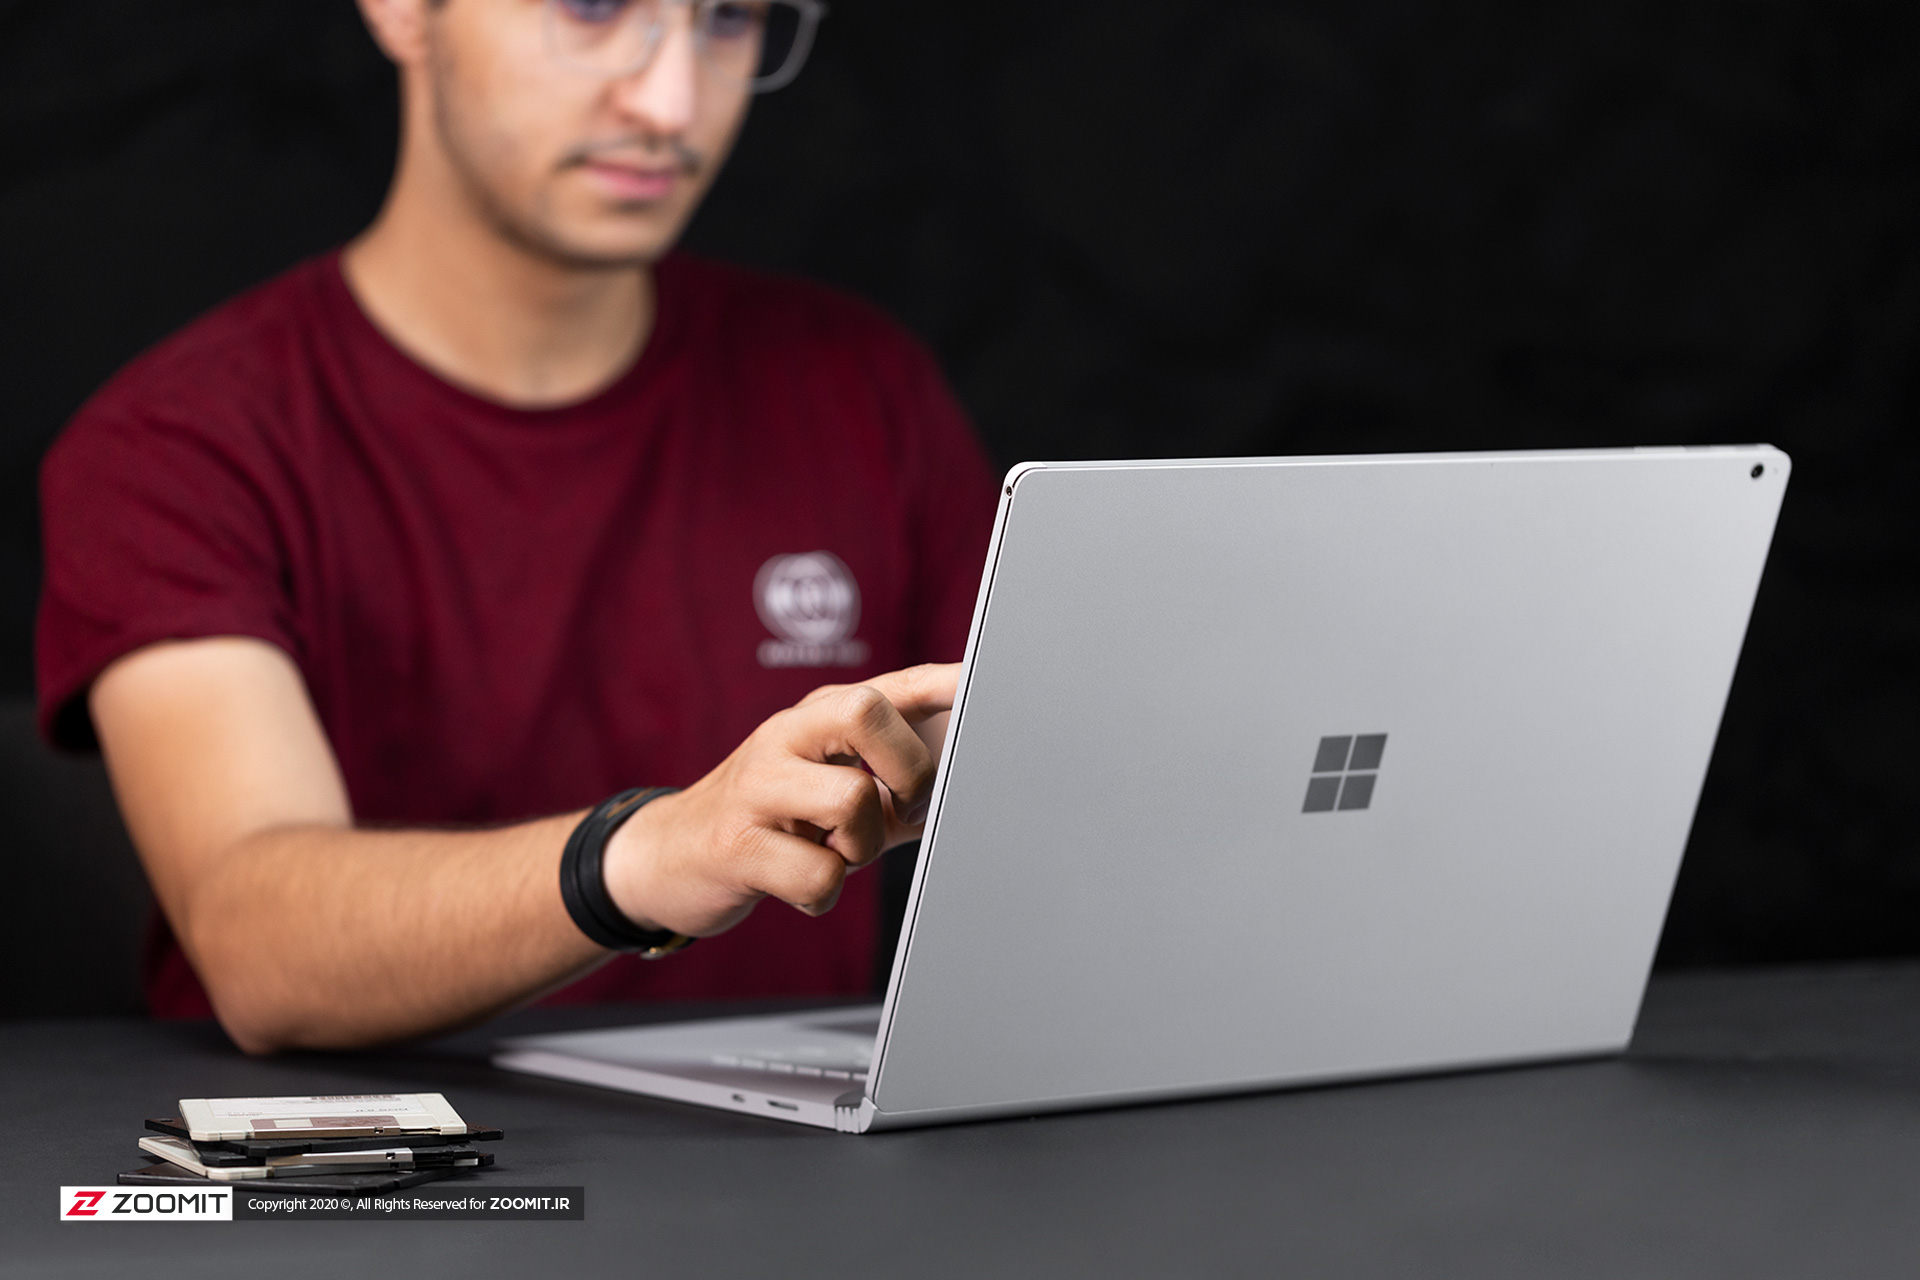 سرفیس بوک 3 مایکروسافت / Microsoft Surface Book 3 در حال استفاده